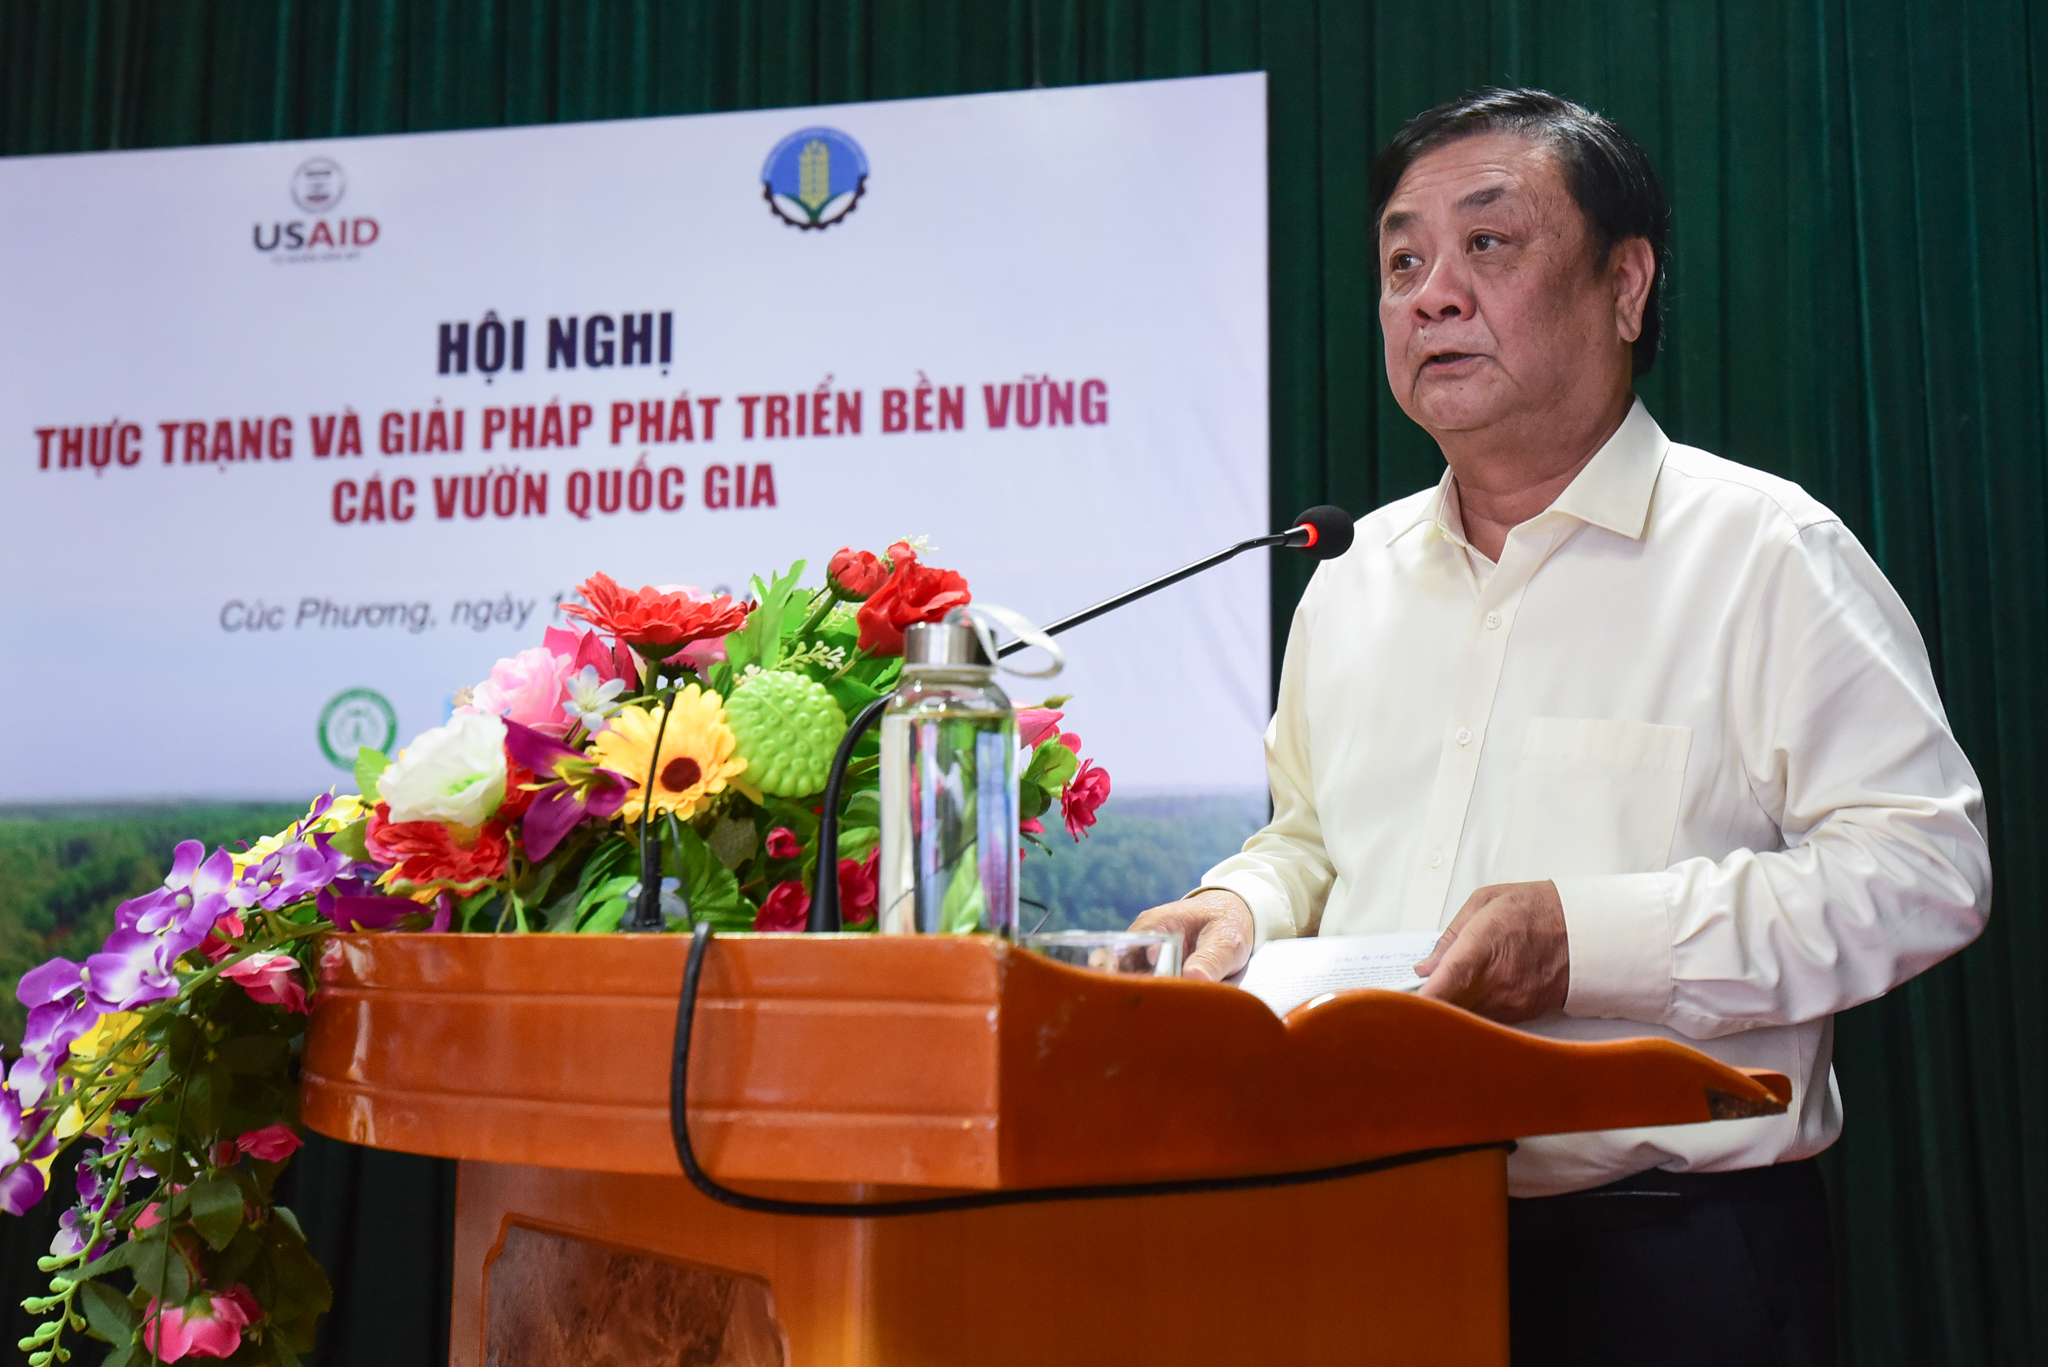 Bộ trưởng Bộ NN-PTNT Lê Minh Hoan chia sẻ về cách tiếp cận phù hợp để phát triển bền vững các Vườn quốc gia. Ảnh: Tùng Đinh.